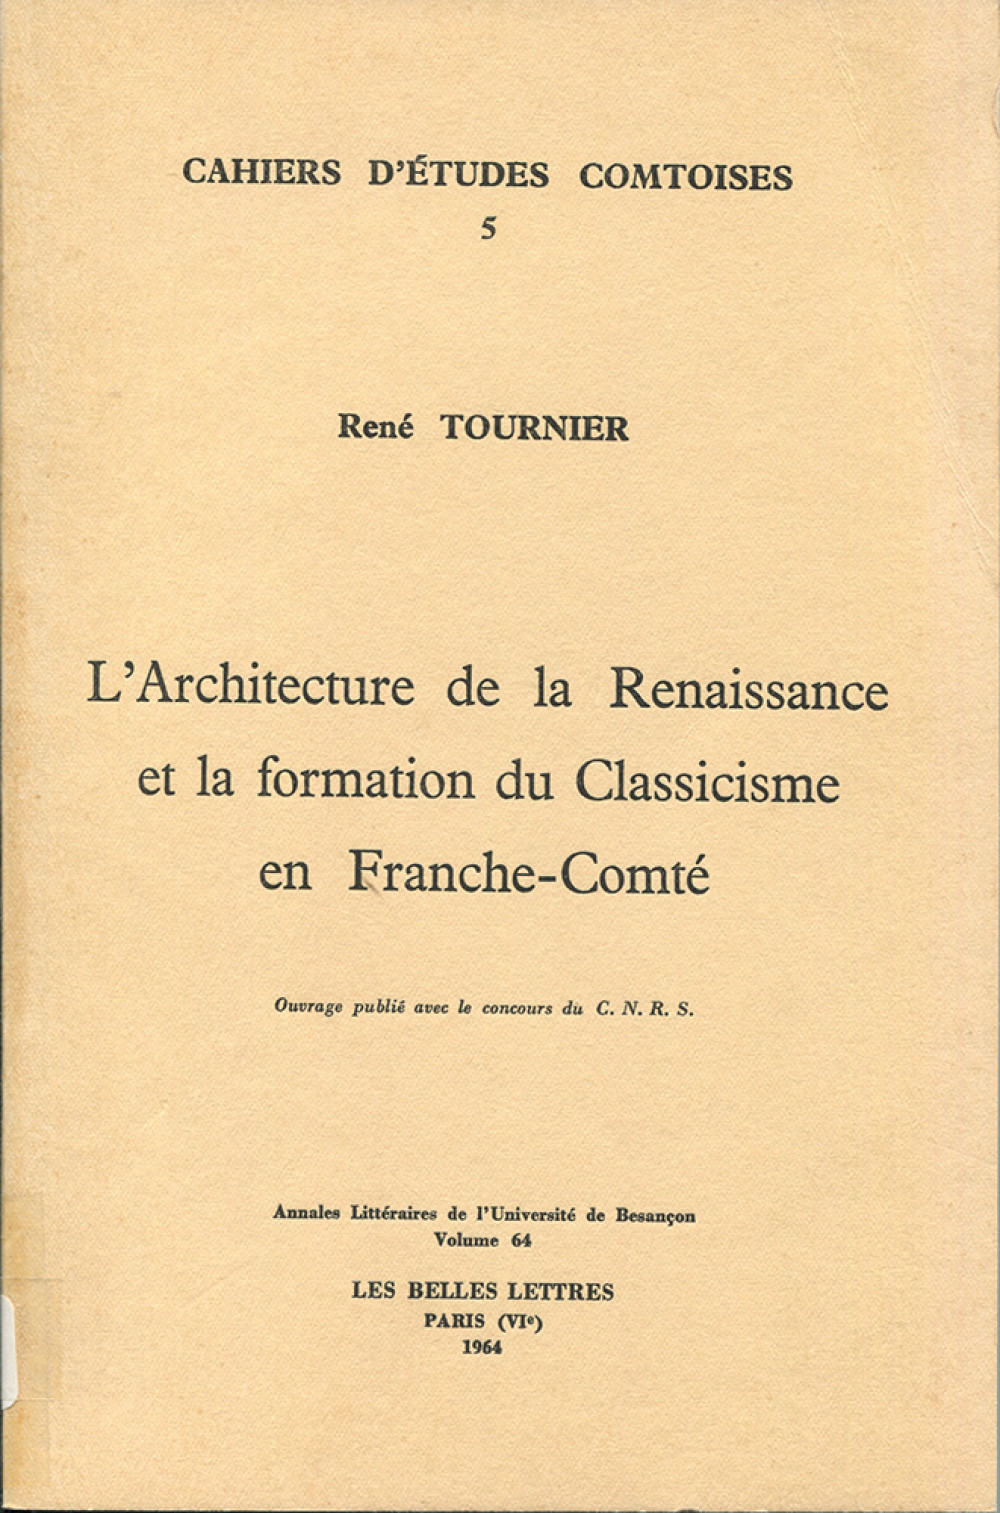 L'architecture de la Renaissance et la formation du Classicisme en Franche-Comté